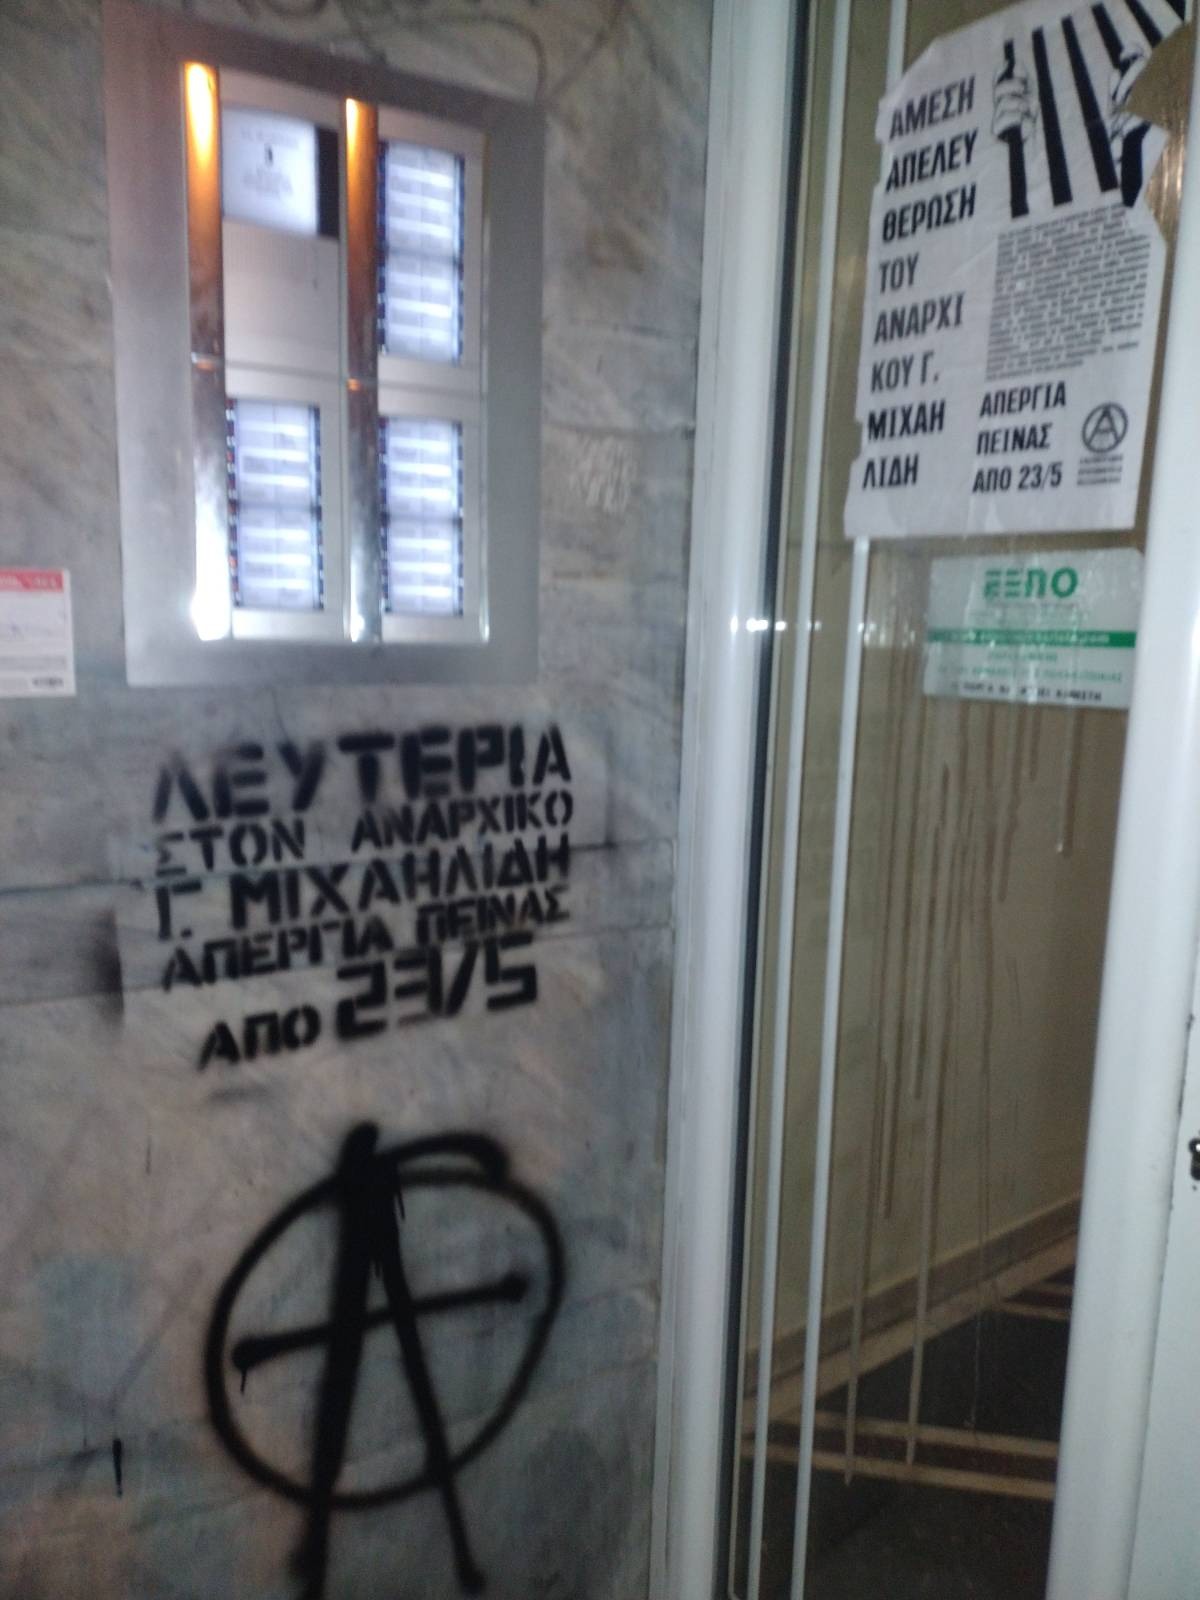 Παρέμβαση στο σπίτι του υπεύθυνου ΟΝΝΕΔ Θεσσαλονίκης από την Ελευθεριακή Πρωτοβουλία Θεσσαλονίκης